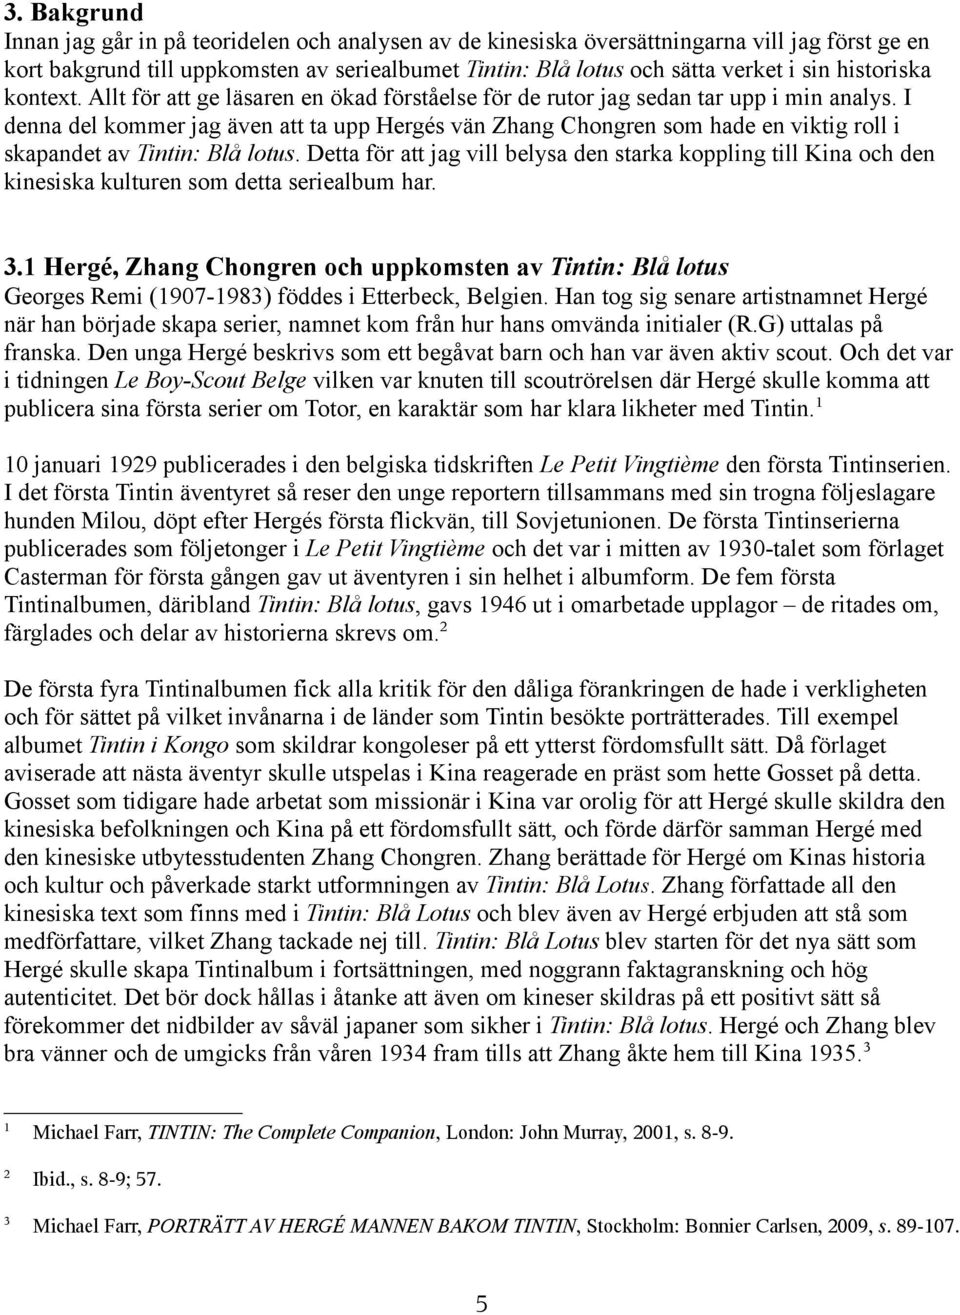 I denna del kommer jag även att ta upp Hergés vän Zhang Chongren som hade en viktig roll i skapandet av Tintin: Blå lotus.